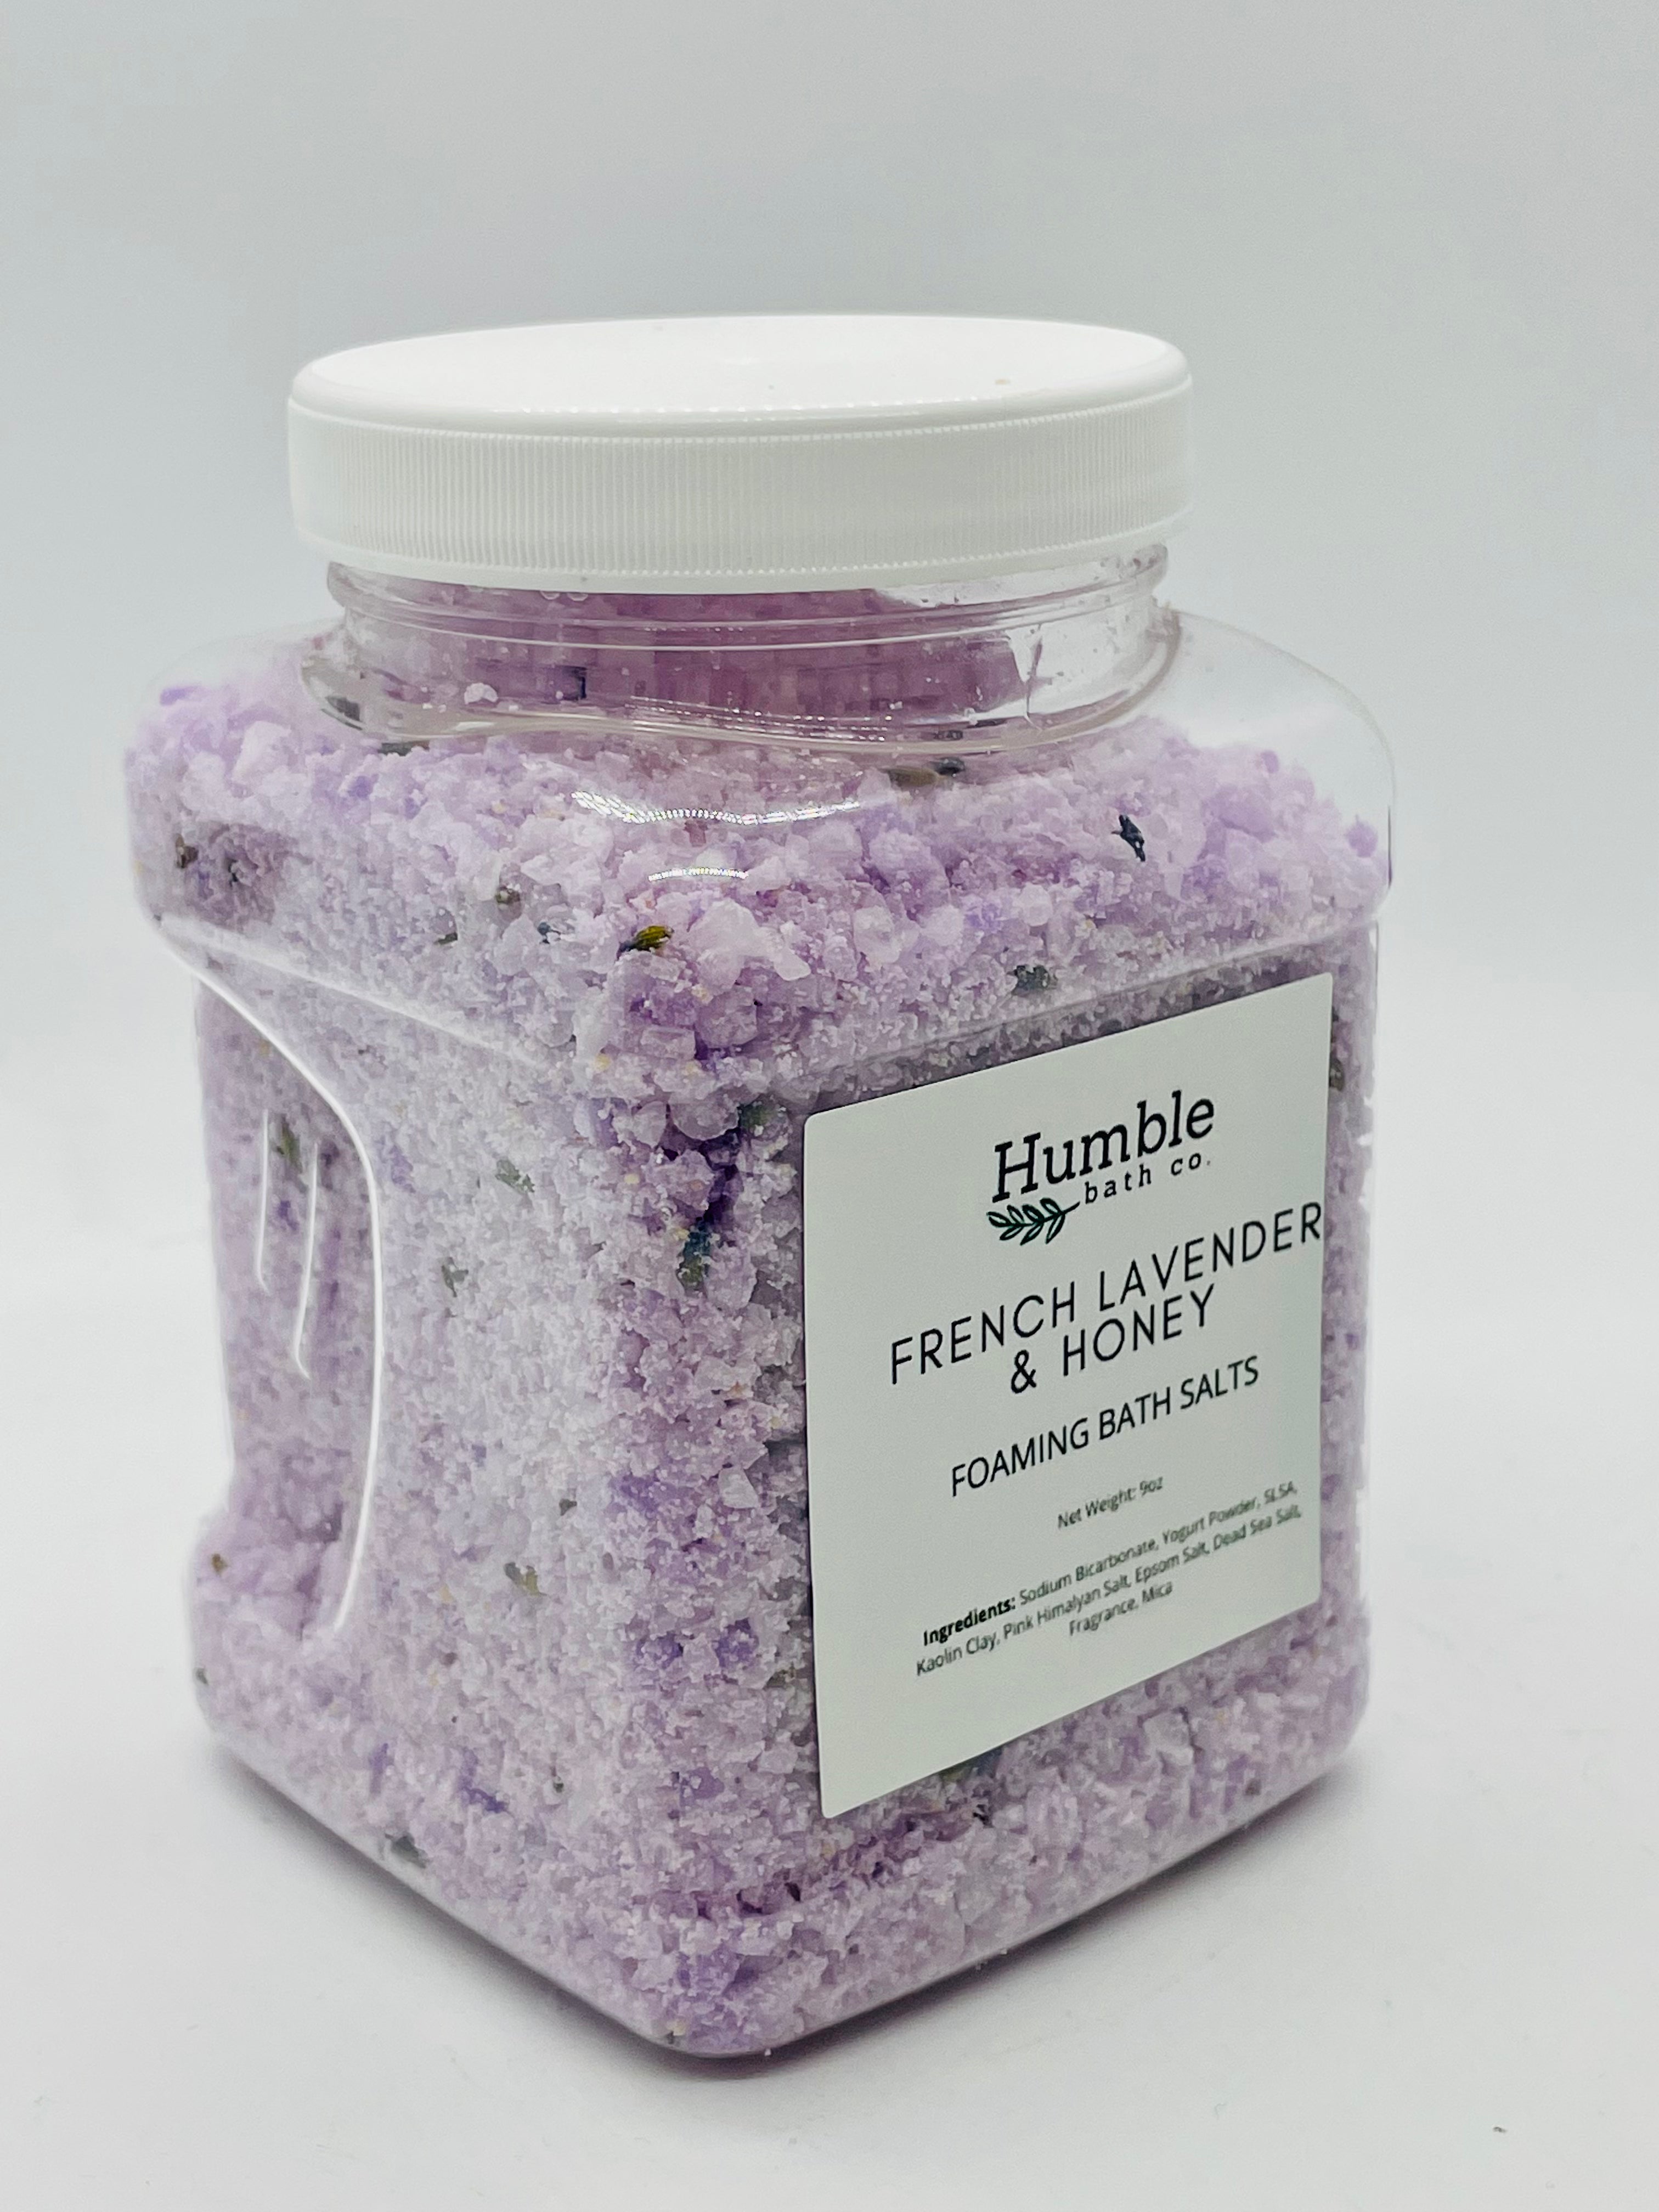 French Lavender Foaming Bath Salts